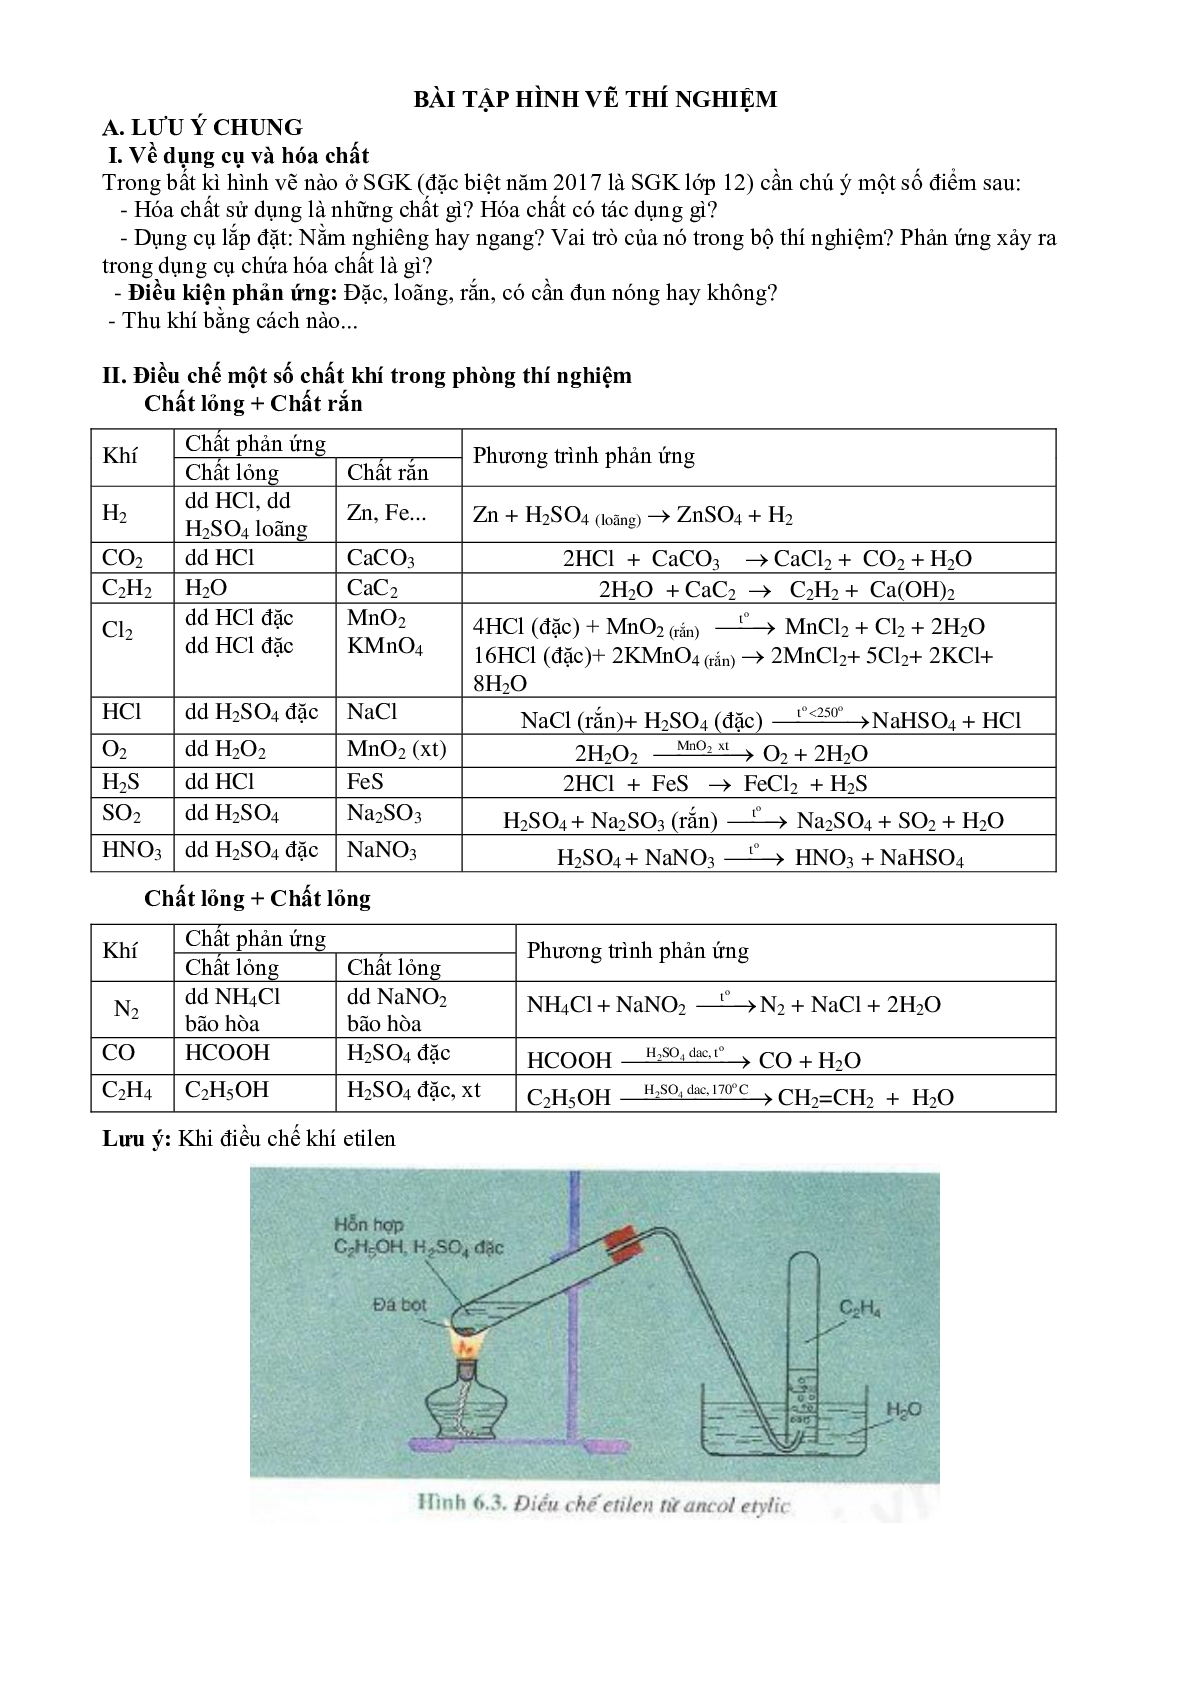 Bài tập chuyên đề thí nghiệm Hóa Học lớp 12 (trang 2)